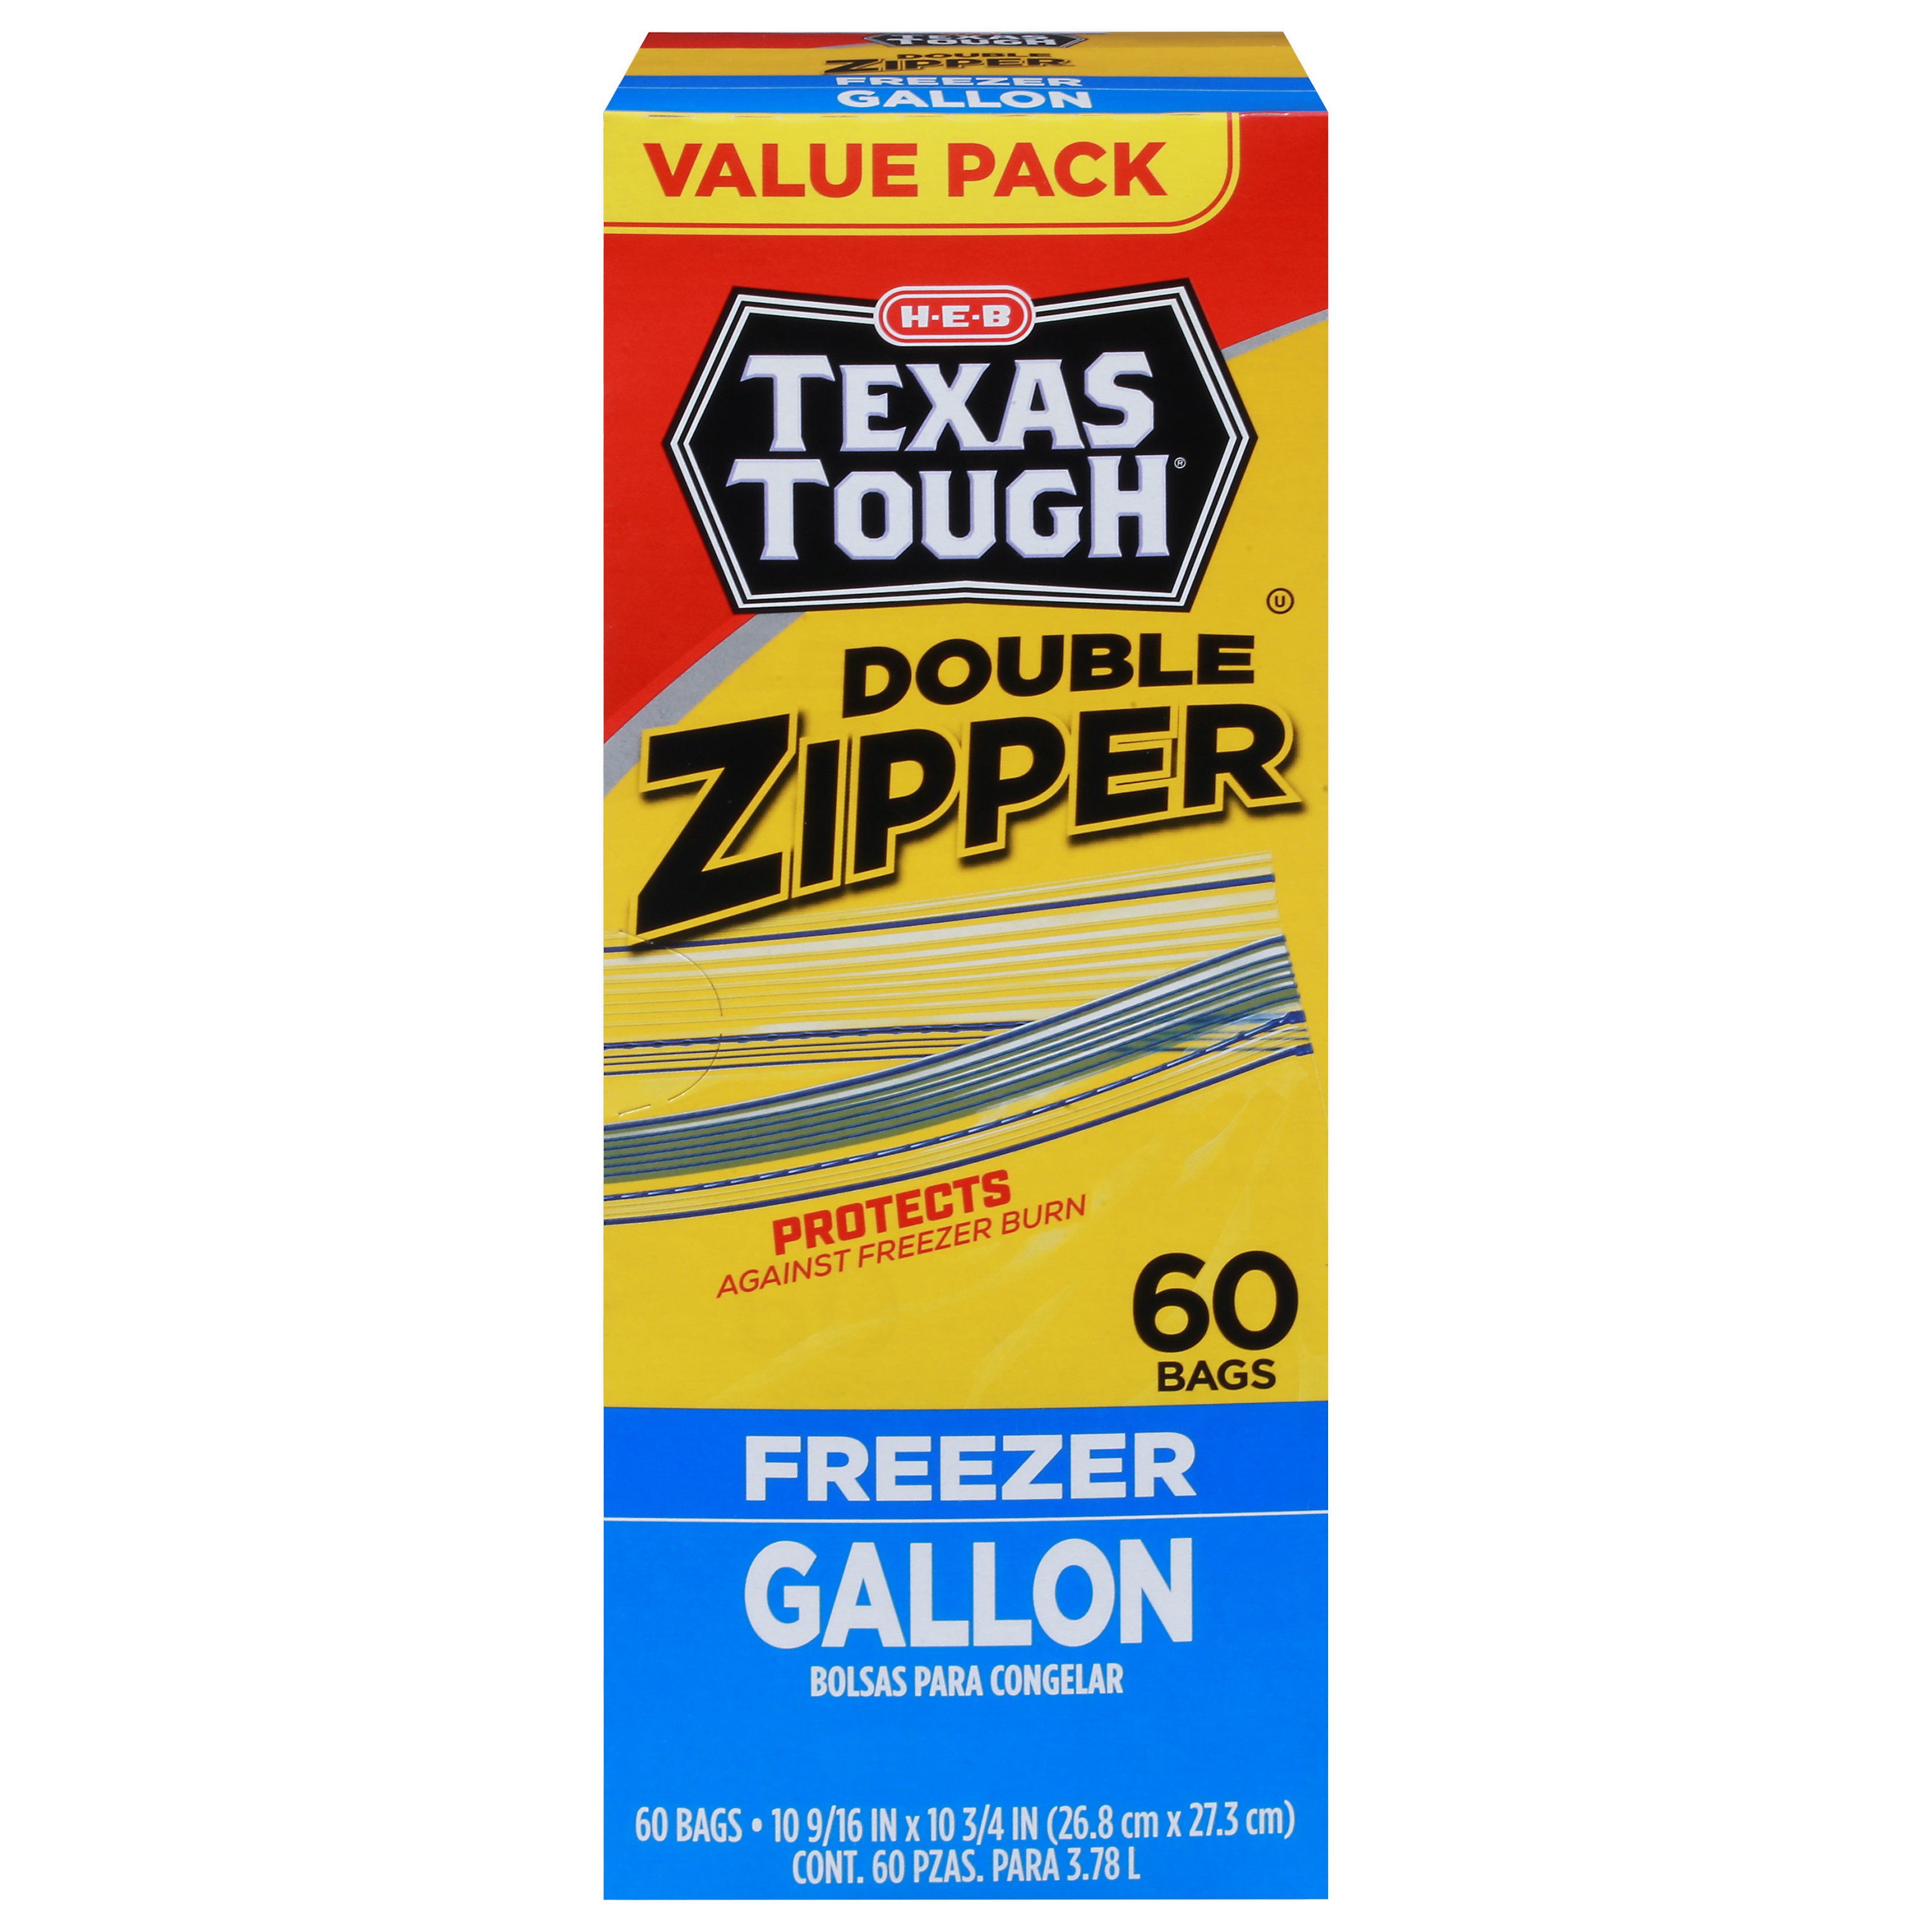 Ziploc Double Zipper Quart Freezer Bags - Shop Storage Bags at H-E-B